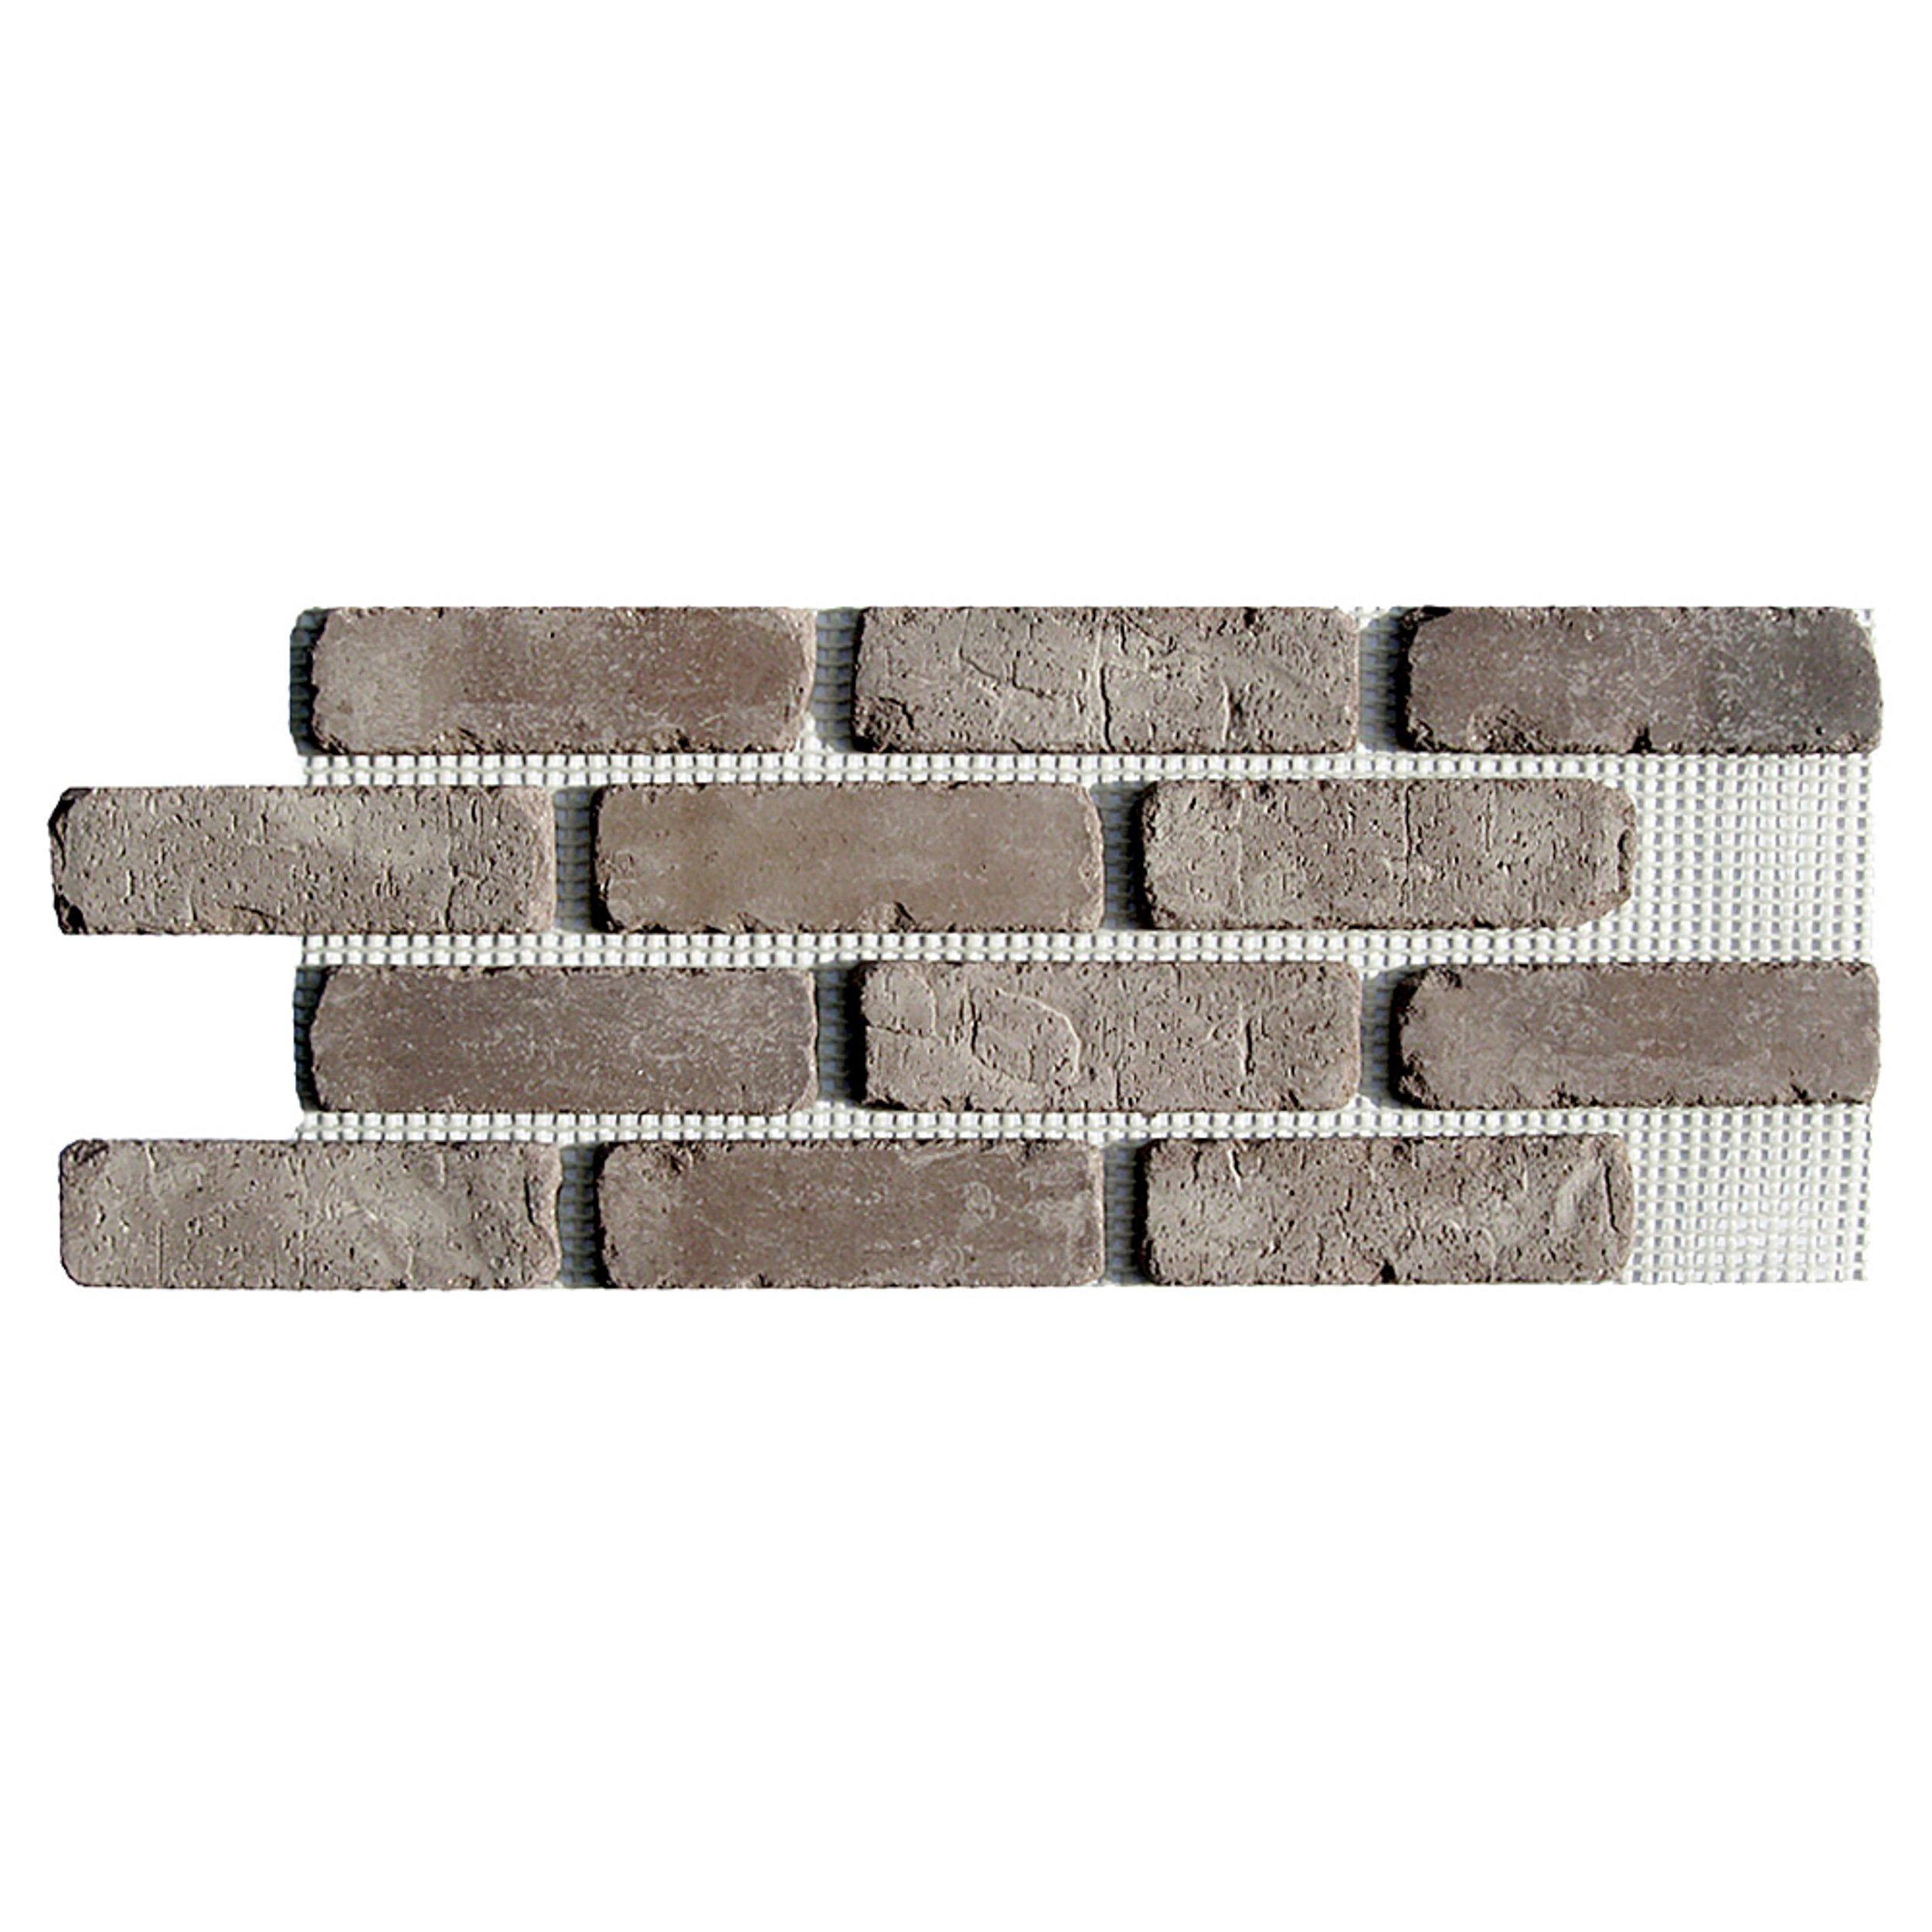 Rushmore Thin Brick Panel